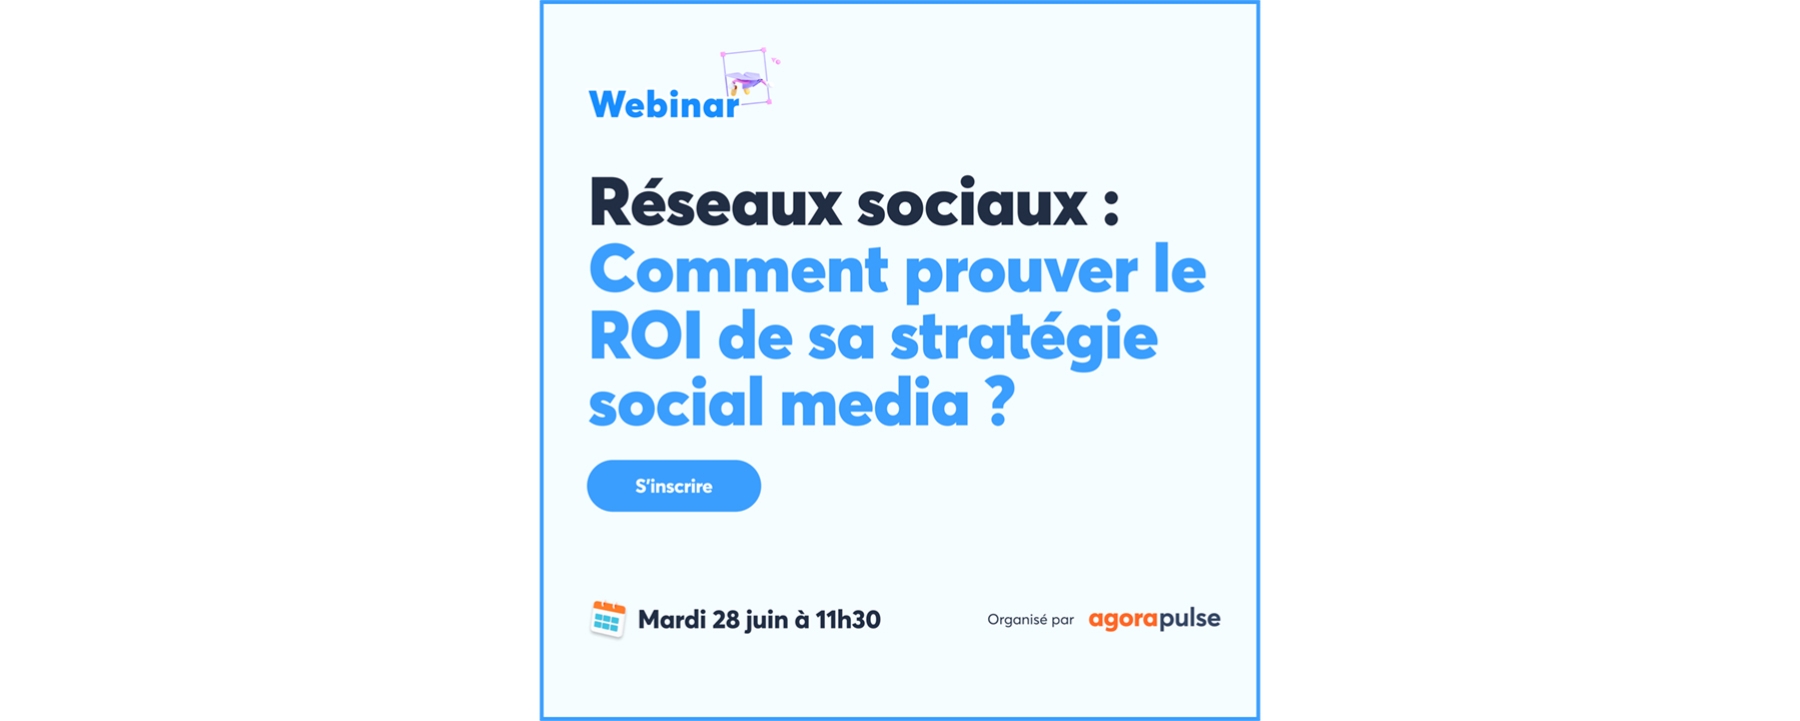 Comment prouver le ROI sa sa stratégie social media ?